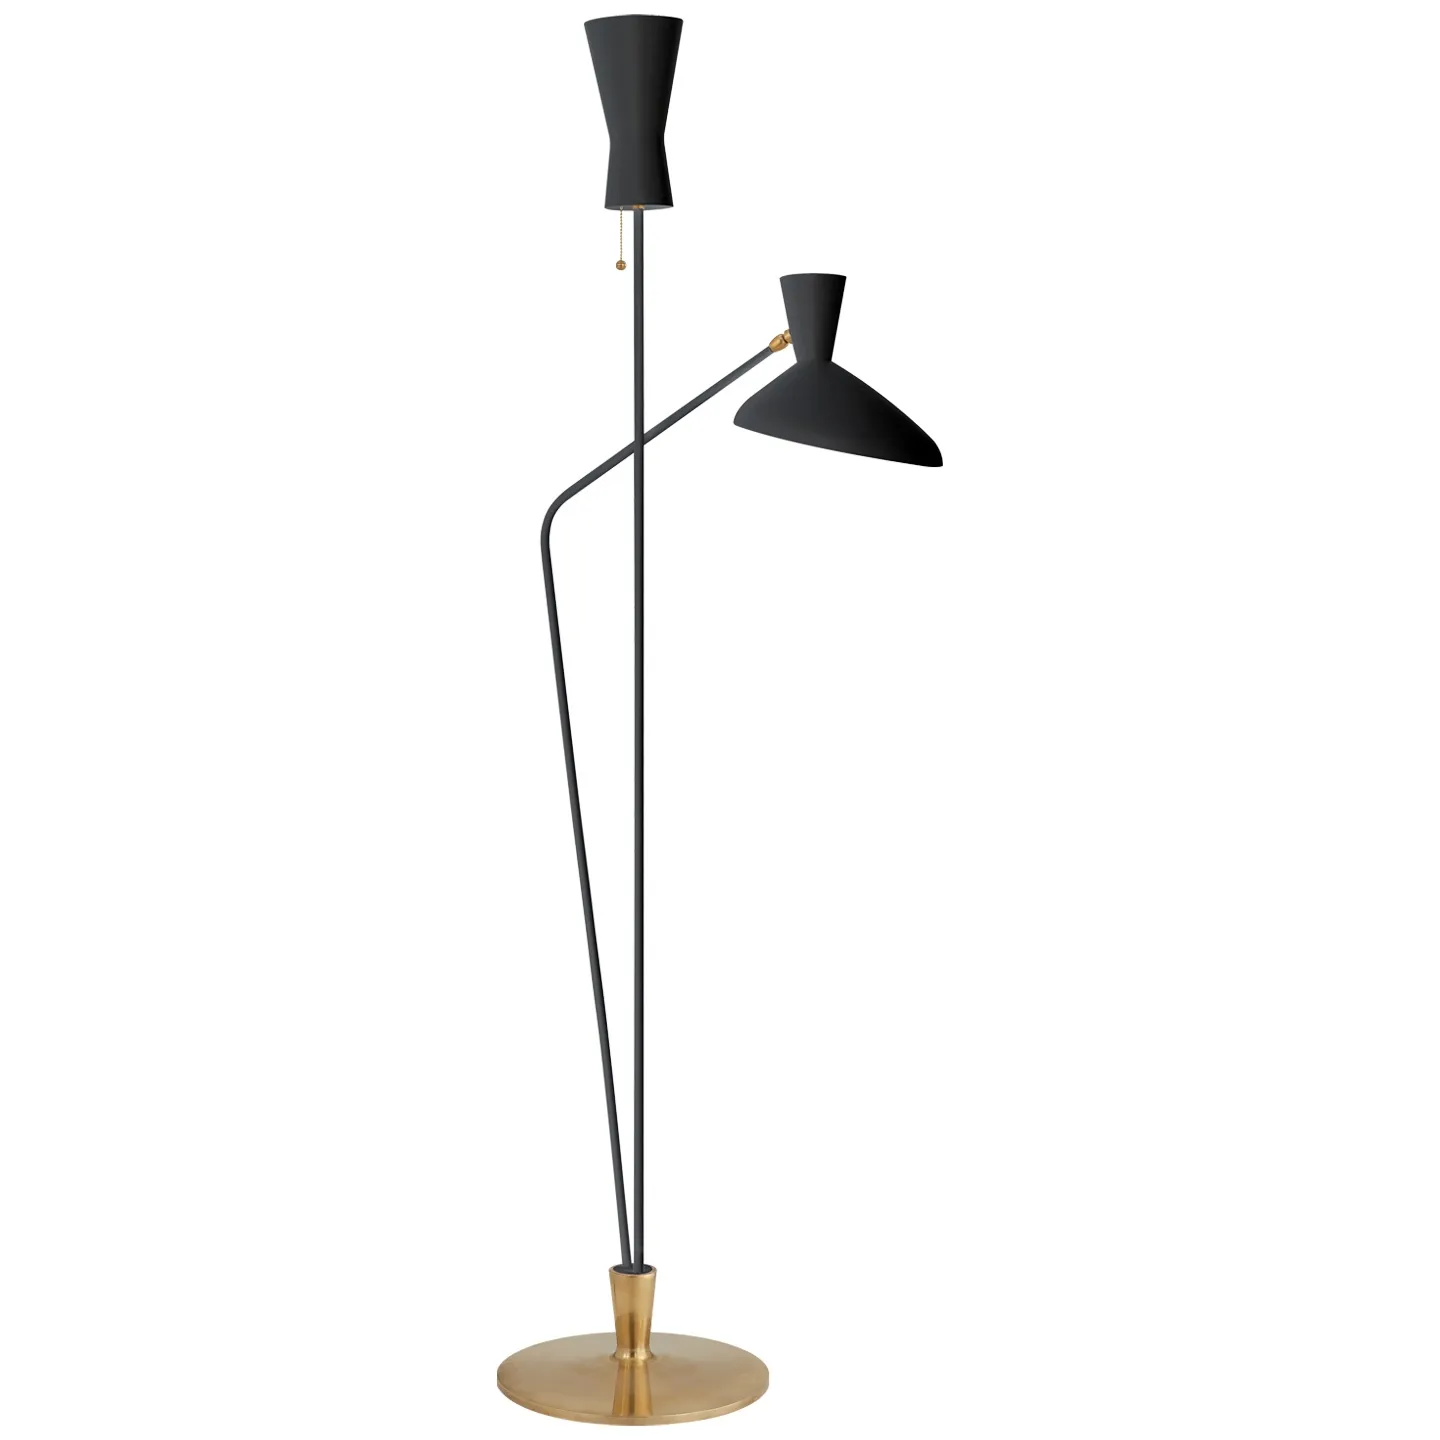 Austen Large Dual Function Floor Lamp in Black